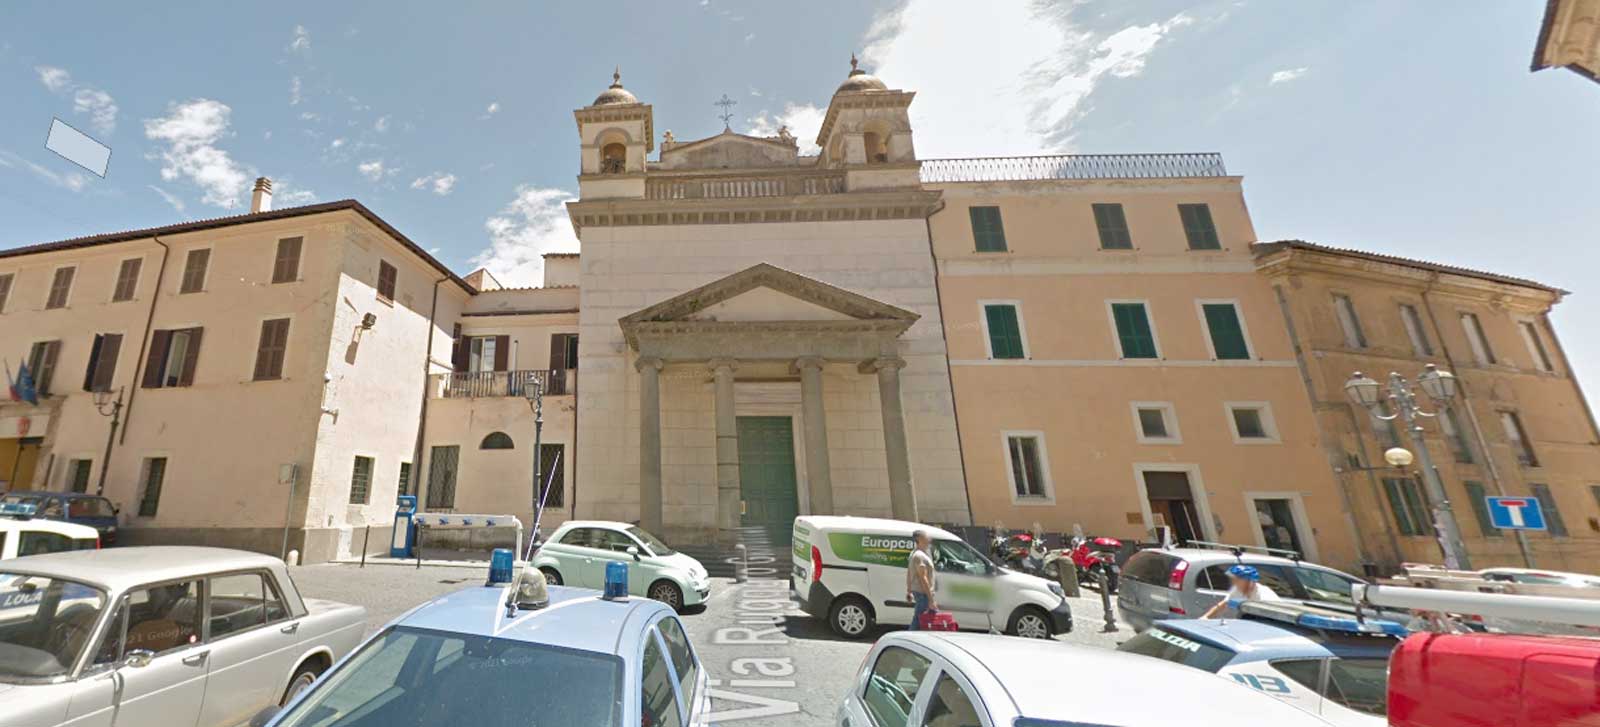 La Curia dona a Velletri 5 palazzi attorno la chiesa di San Martino. Il Comune ha deciso cosa farci